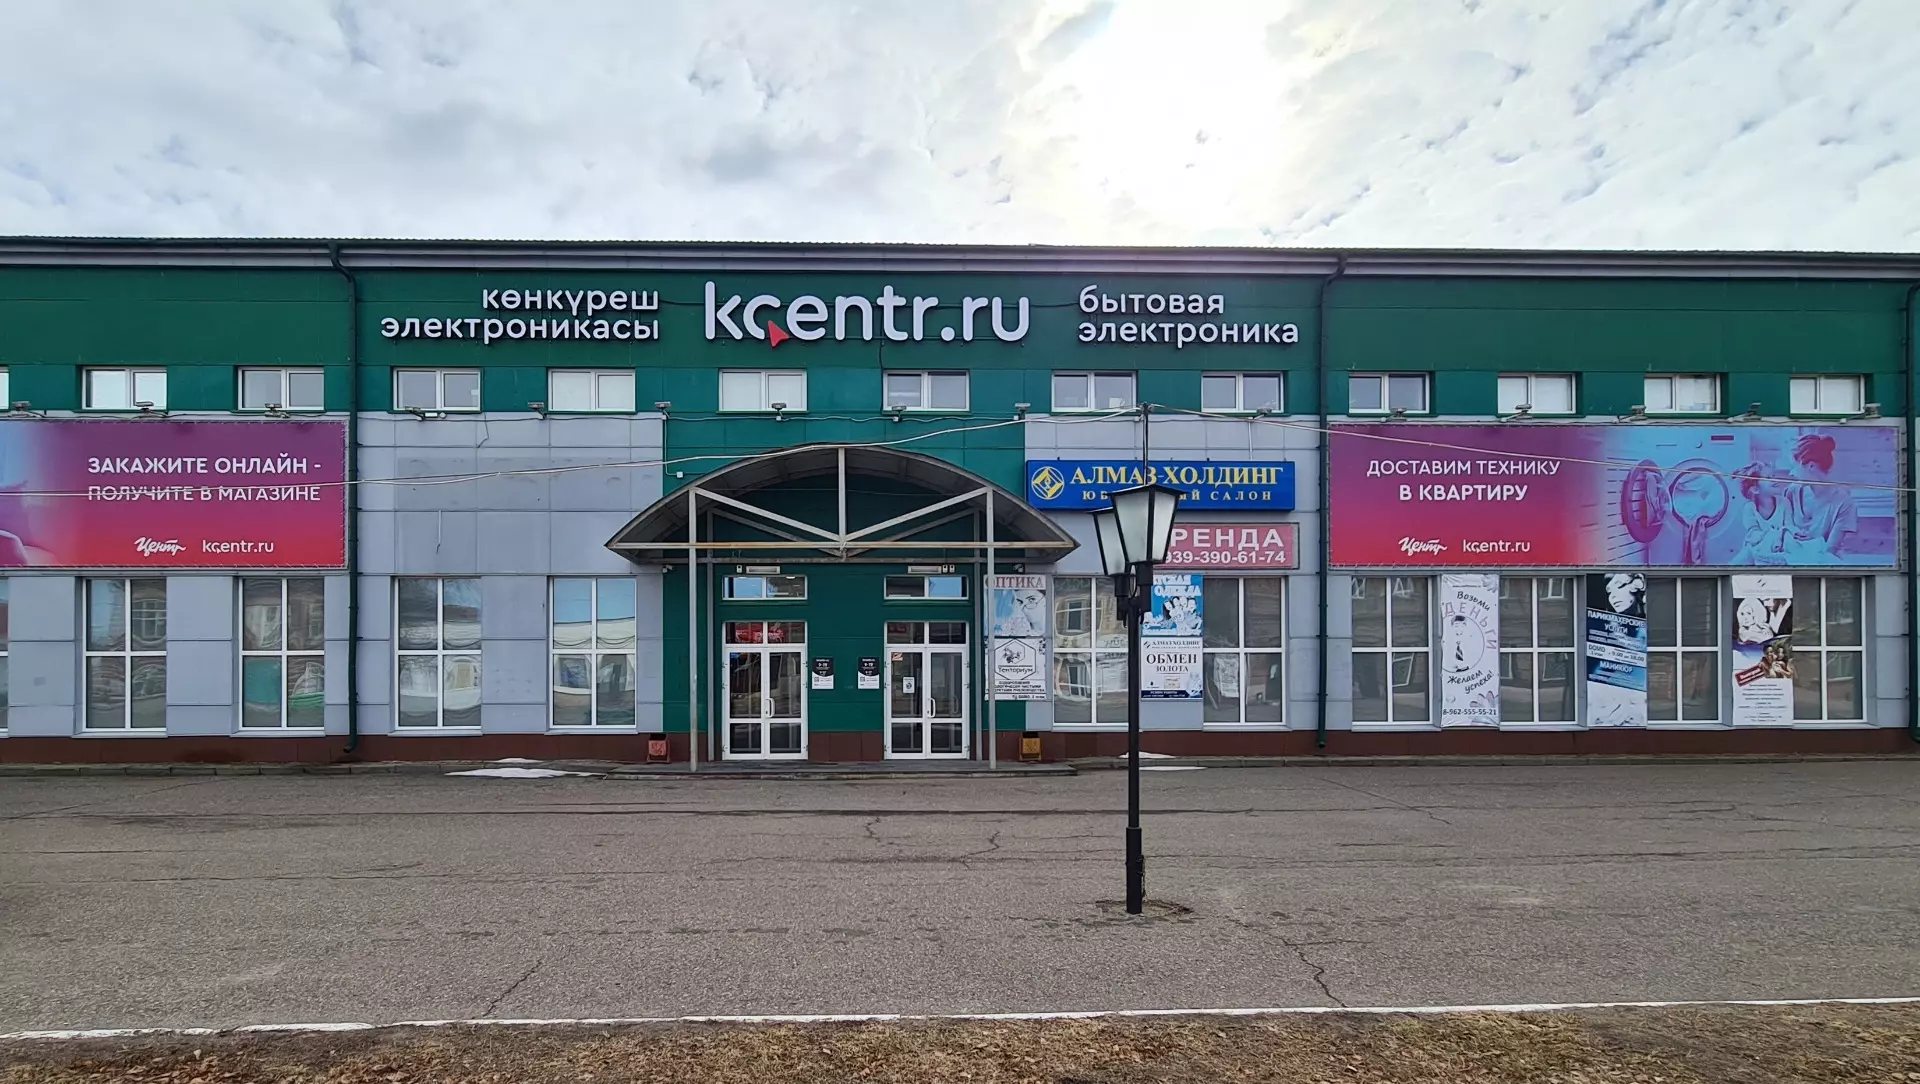 Телеграм: Сеть электроники «Корпорация Центр» из Ижевска закрывает бизнес